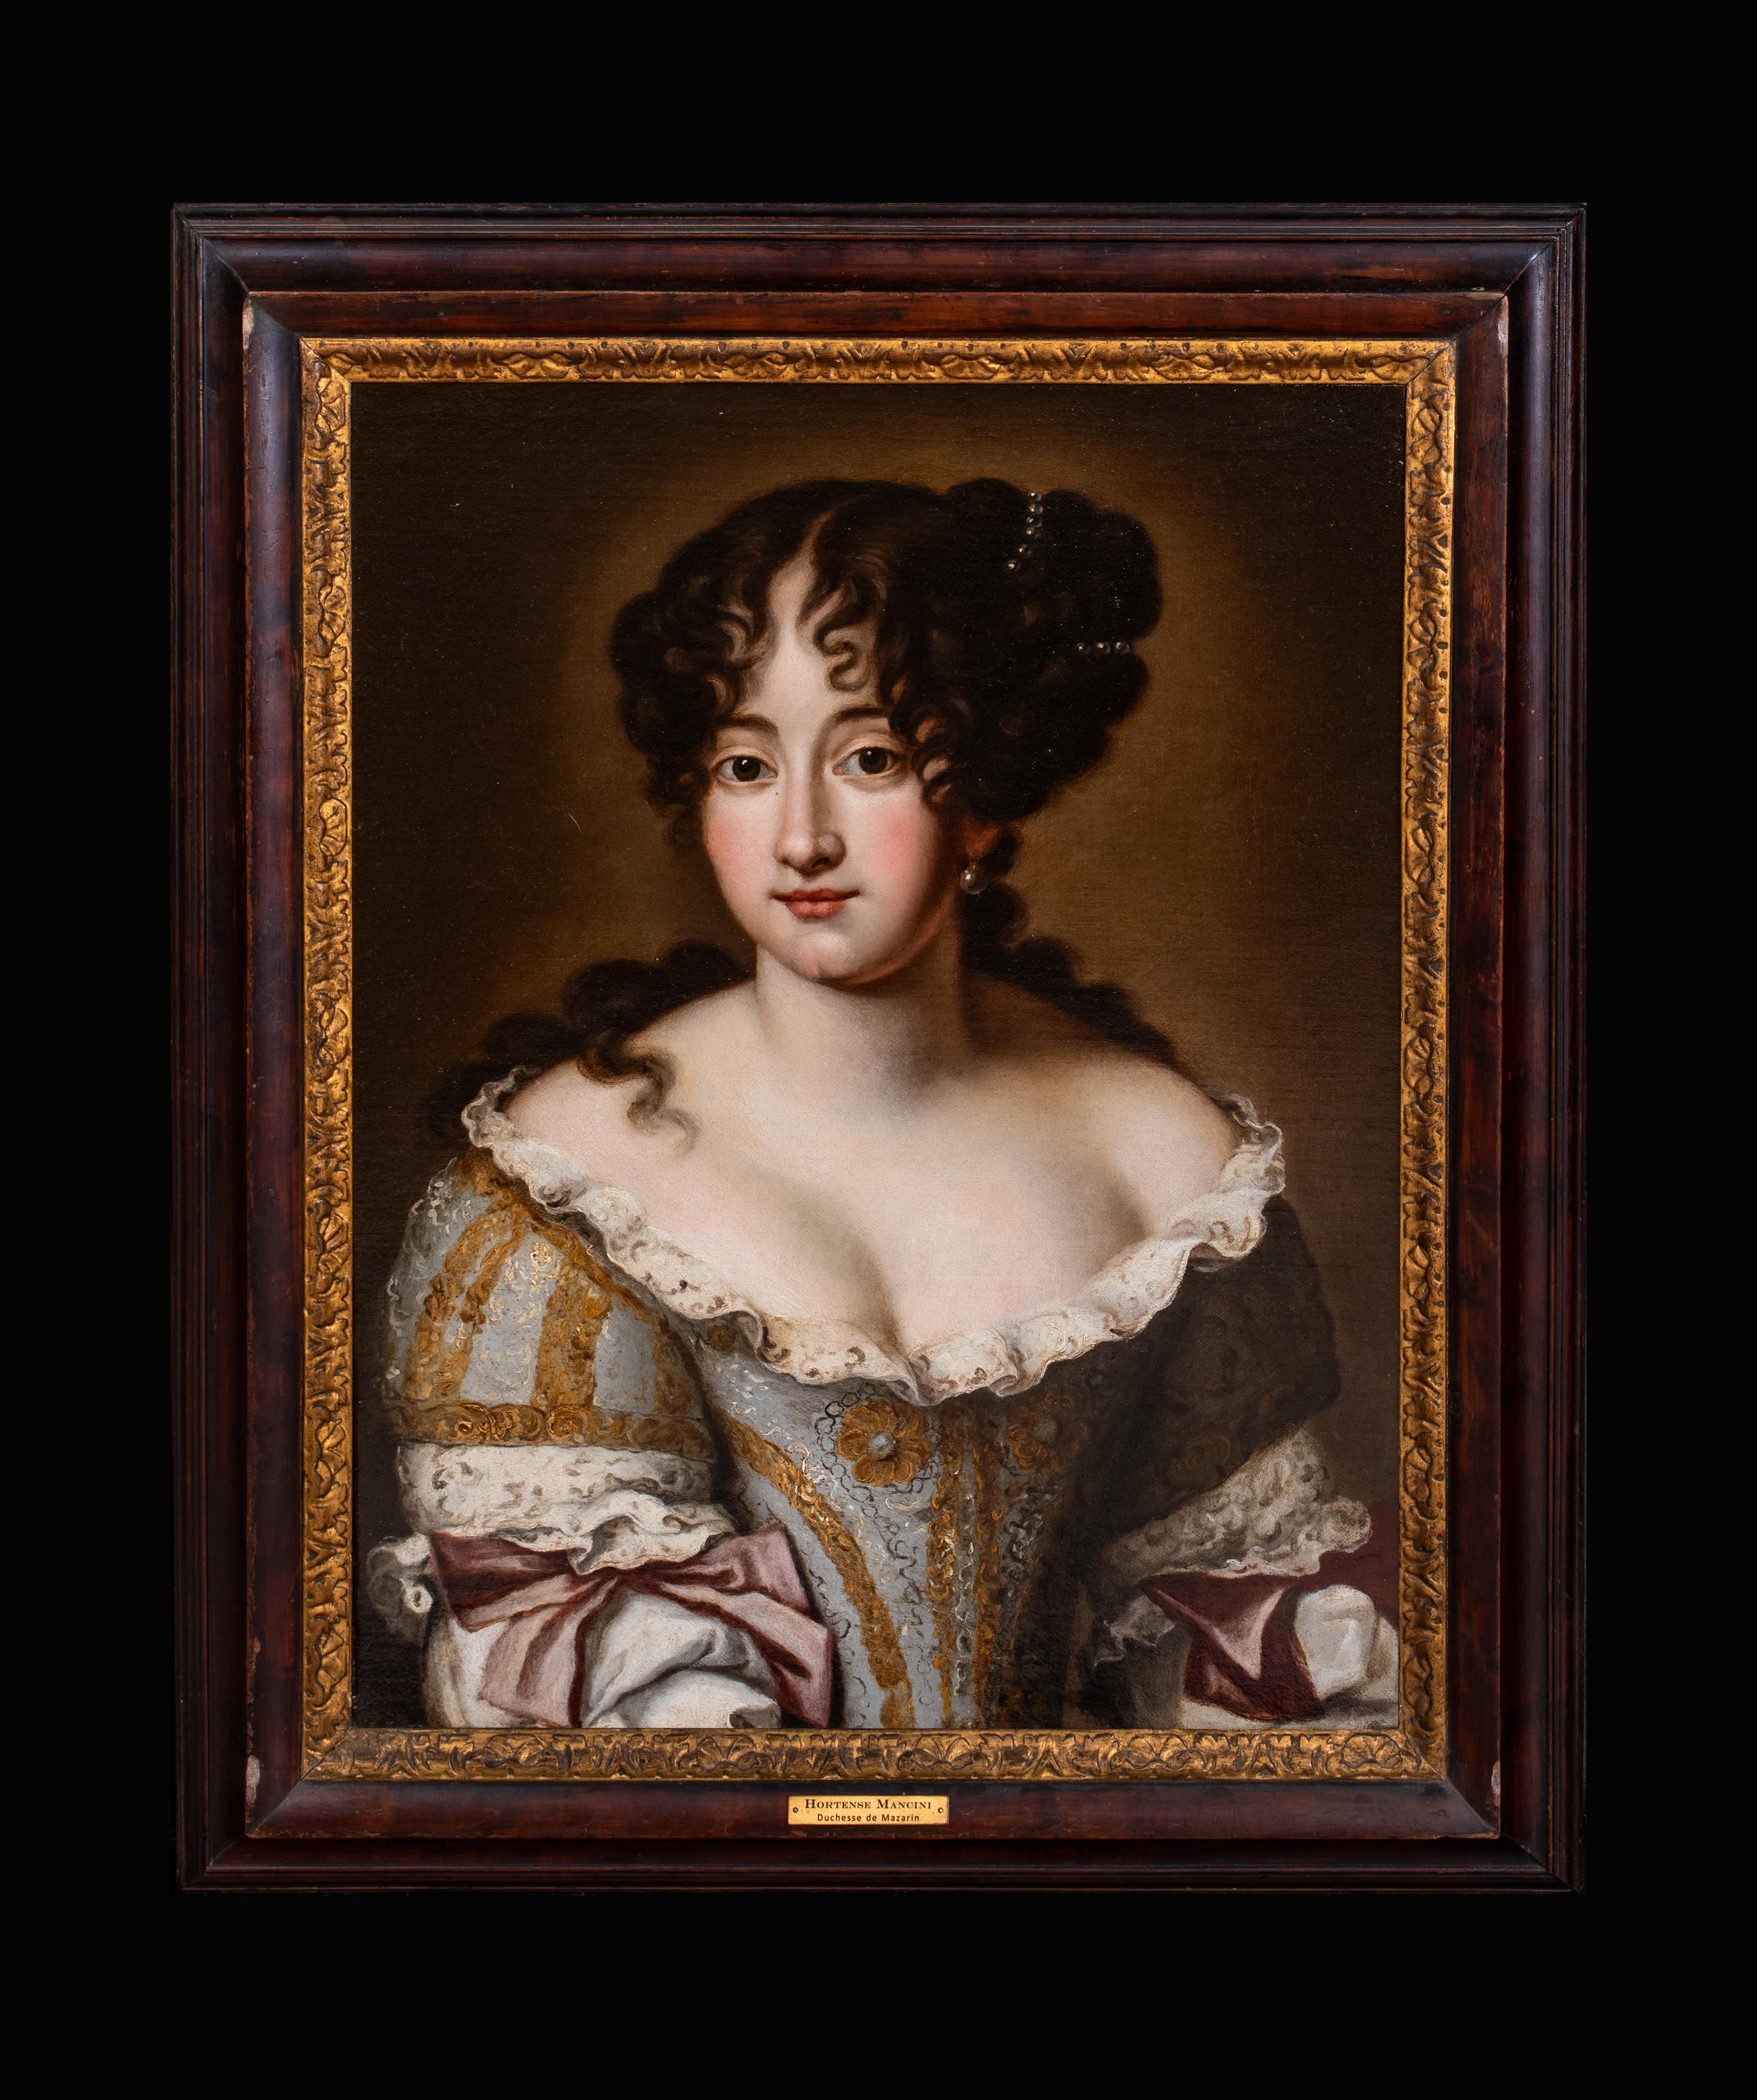 Porträt von Hortense Mancini, Herzogin von Mazarin (1746-1699), 17. Jahrhundert – Painting von Jacob Ferdinand Voet